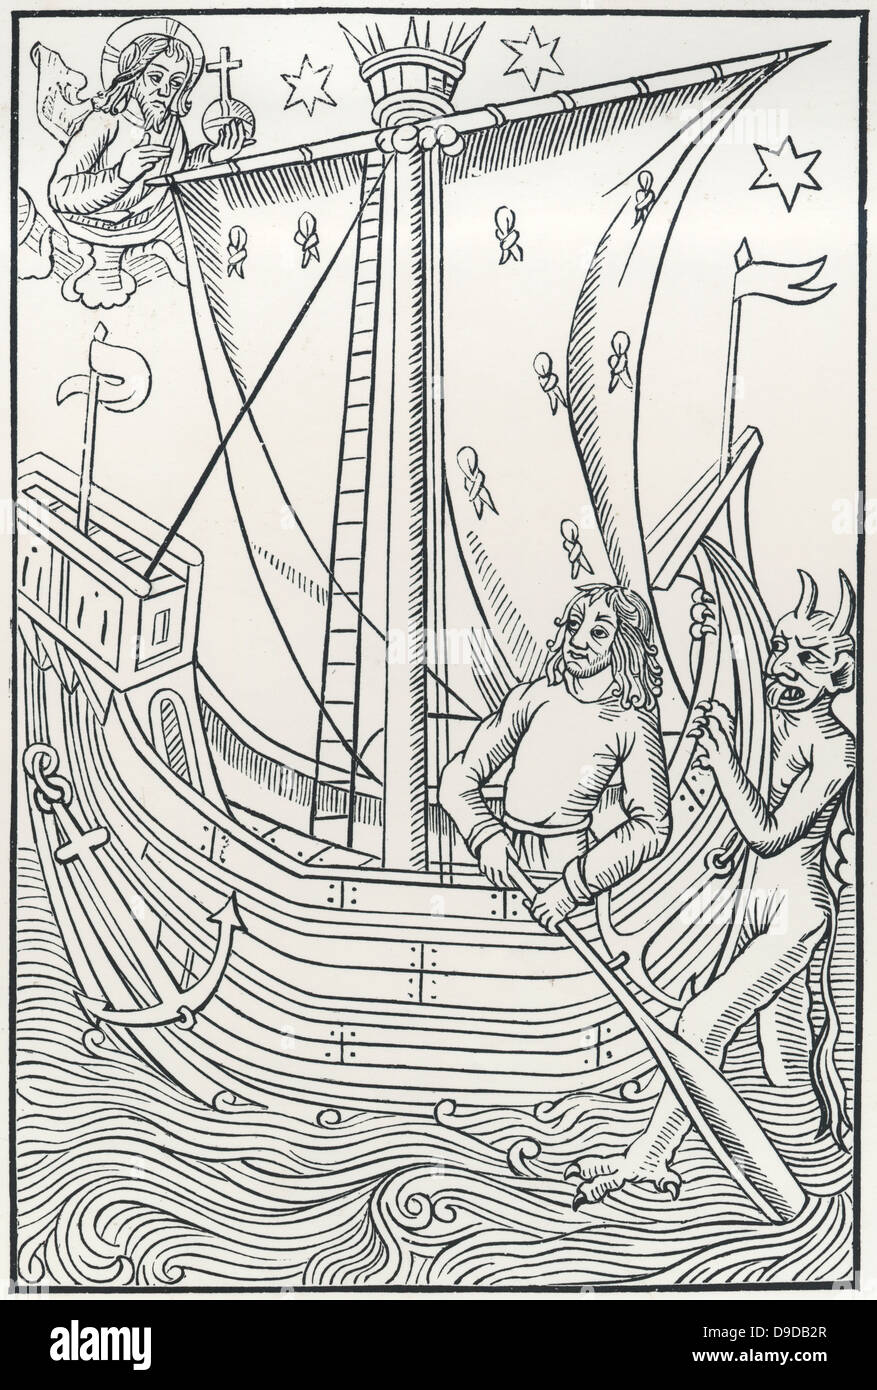 Der Teufel versucht der Steuermann eines Schiffes. Holzschnitt aus einem frühen gedruckte Ausgabe des Buches der Narren, eine Allegorie in der westlichen Literatur mit Ursprung vor dem Druck. Stockfoto